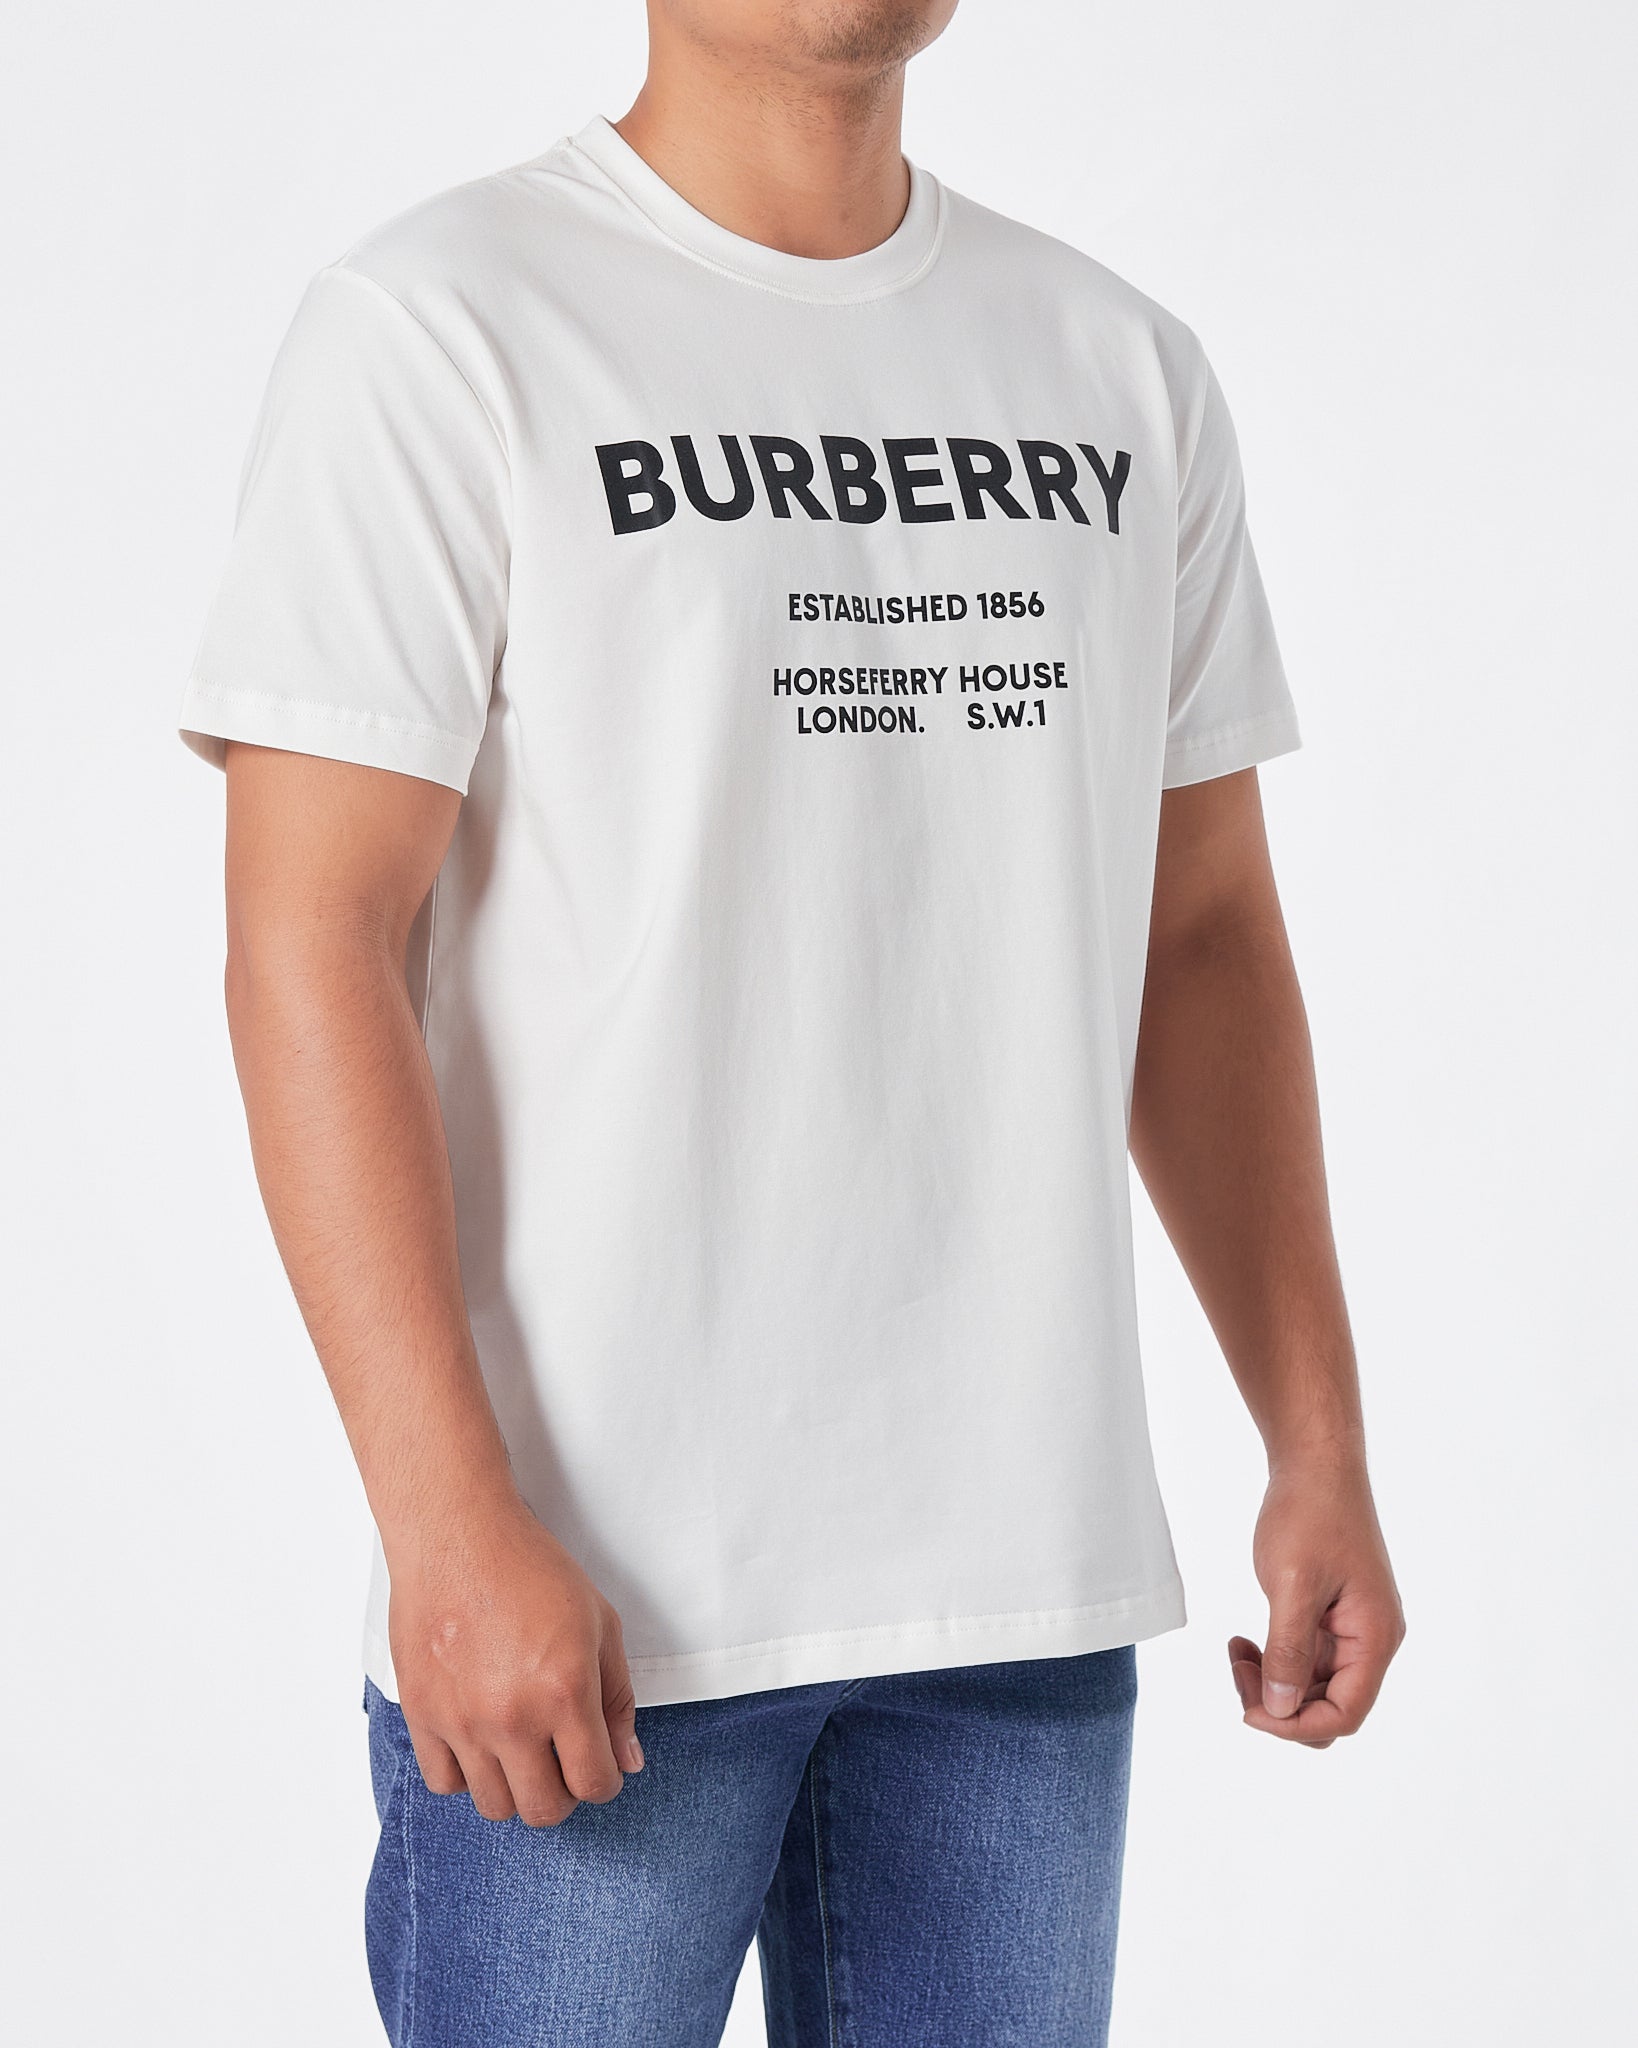 BUR Logo Printed Men White T-Shirt 16.90